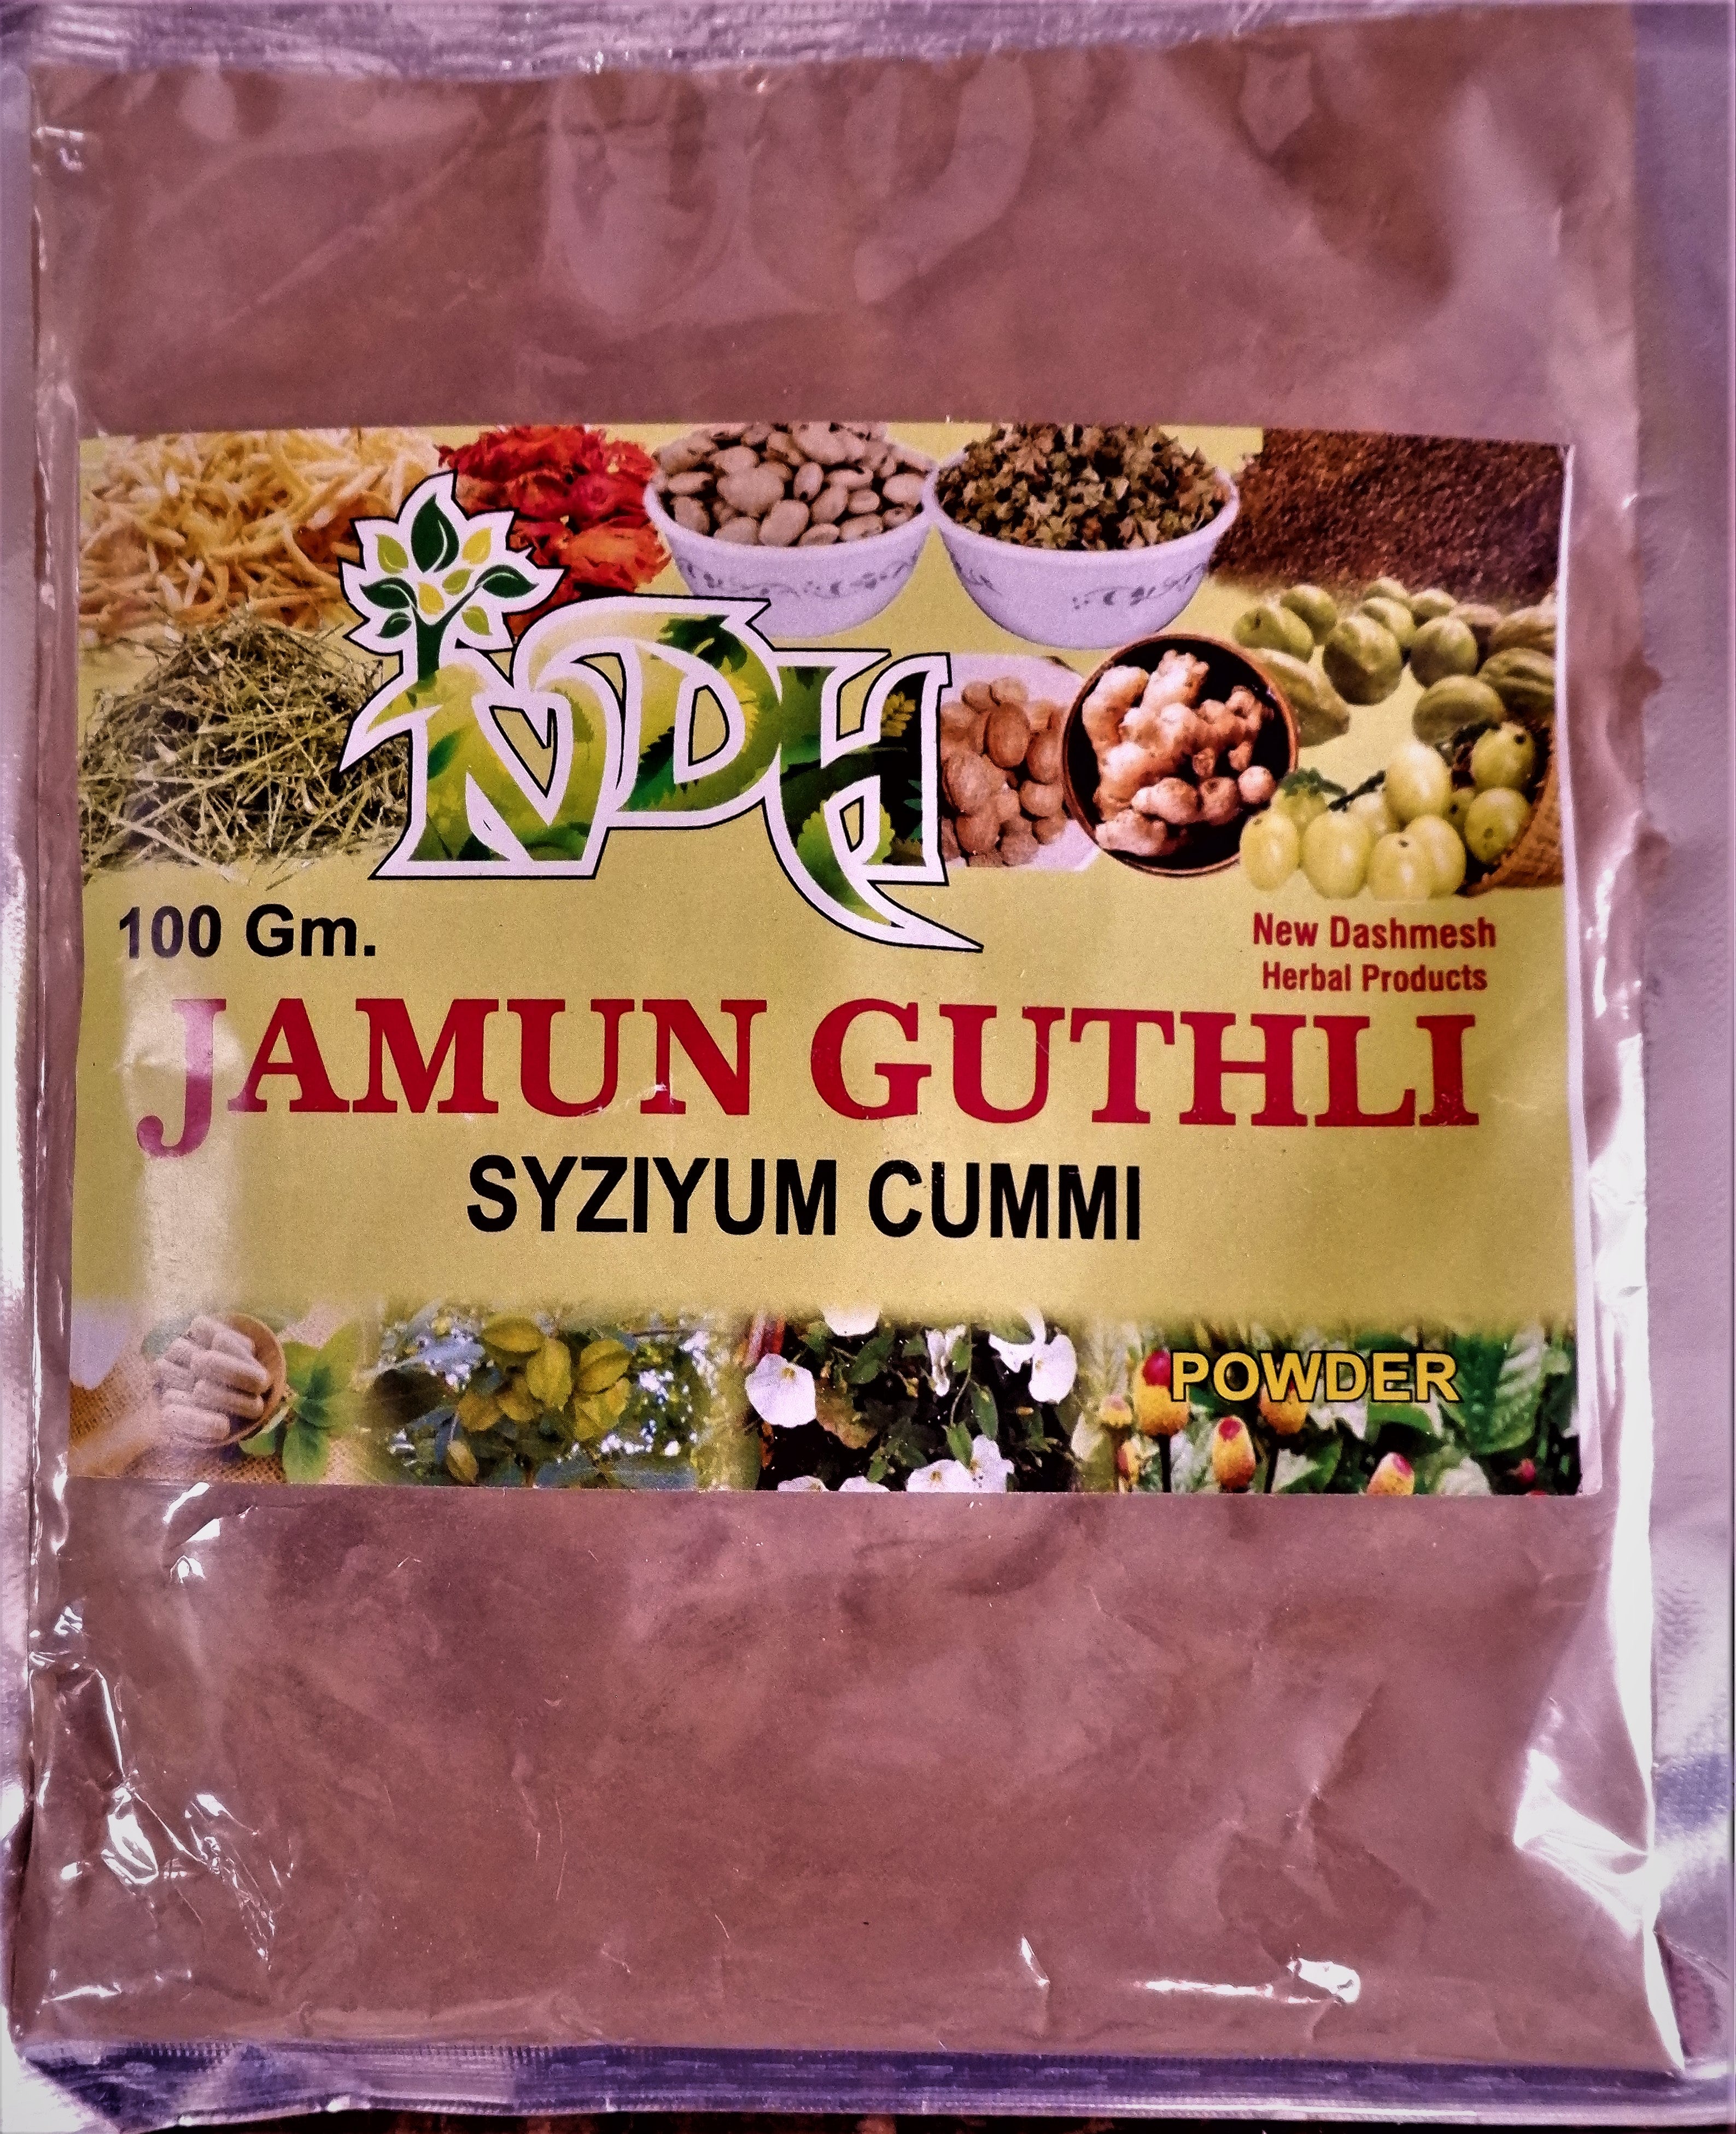 NDH Jamun Guthli Powder